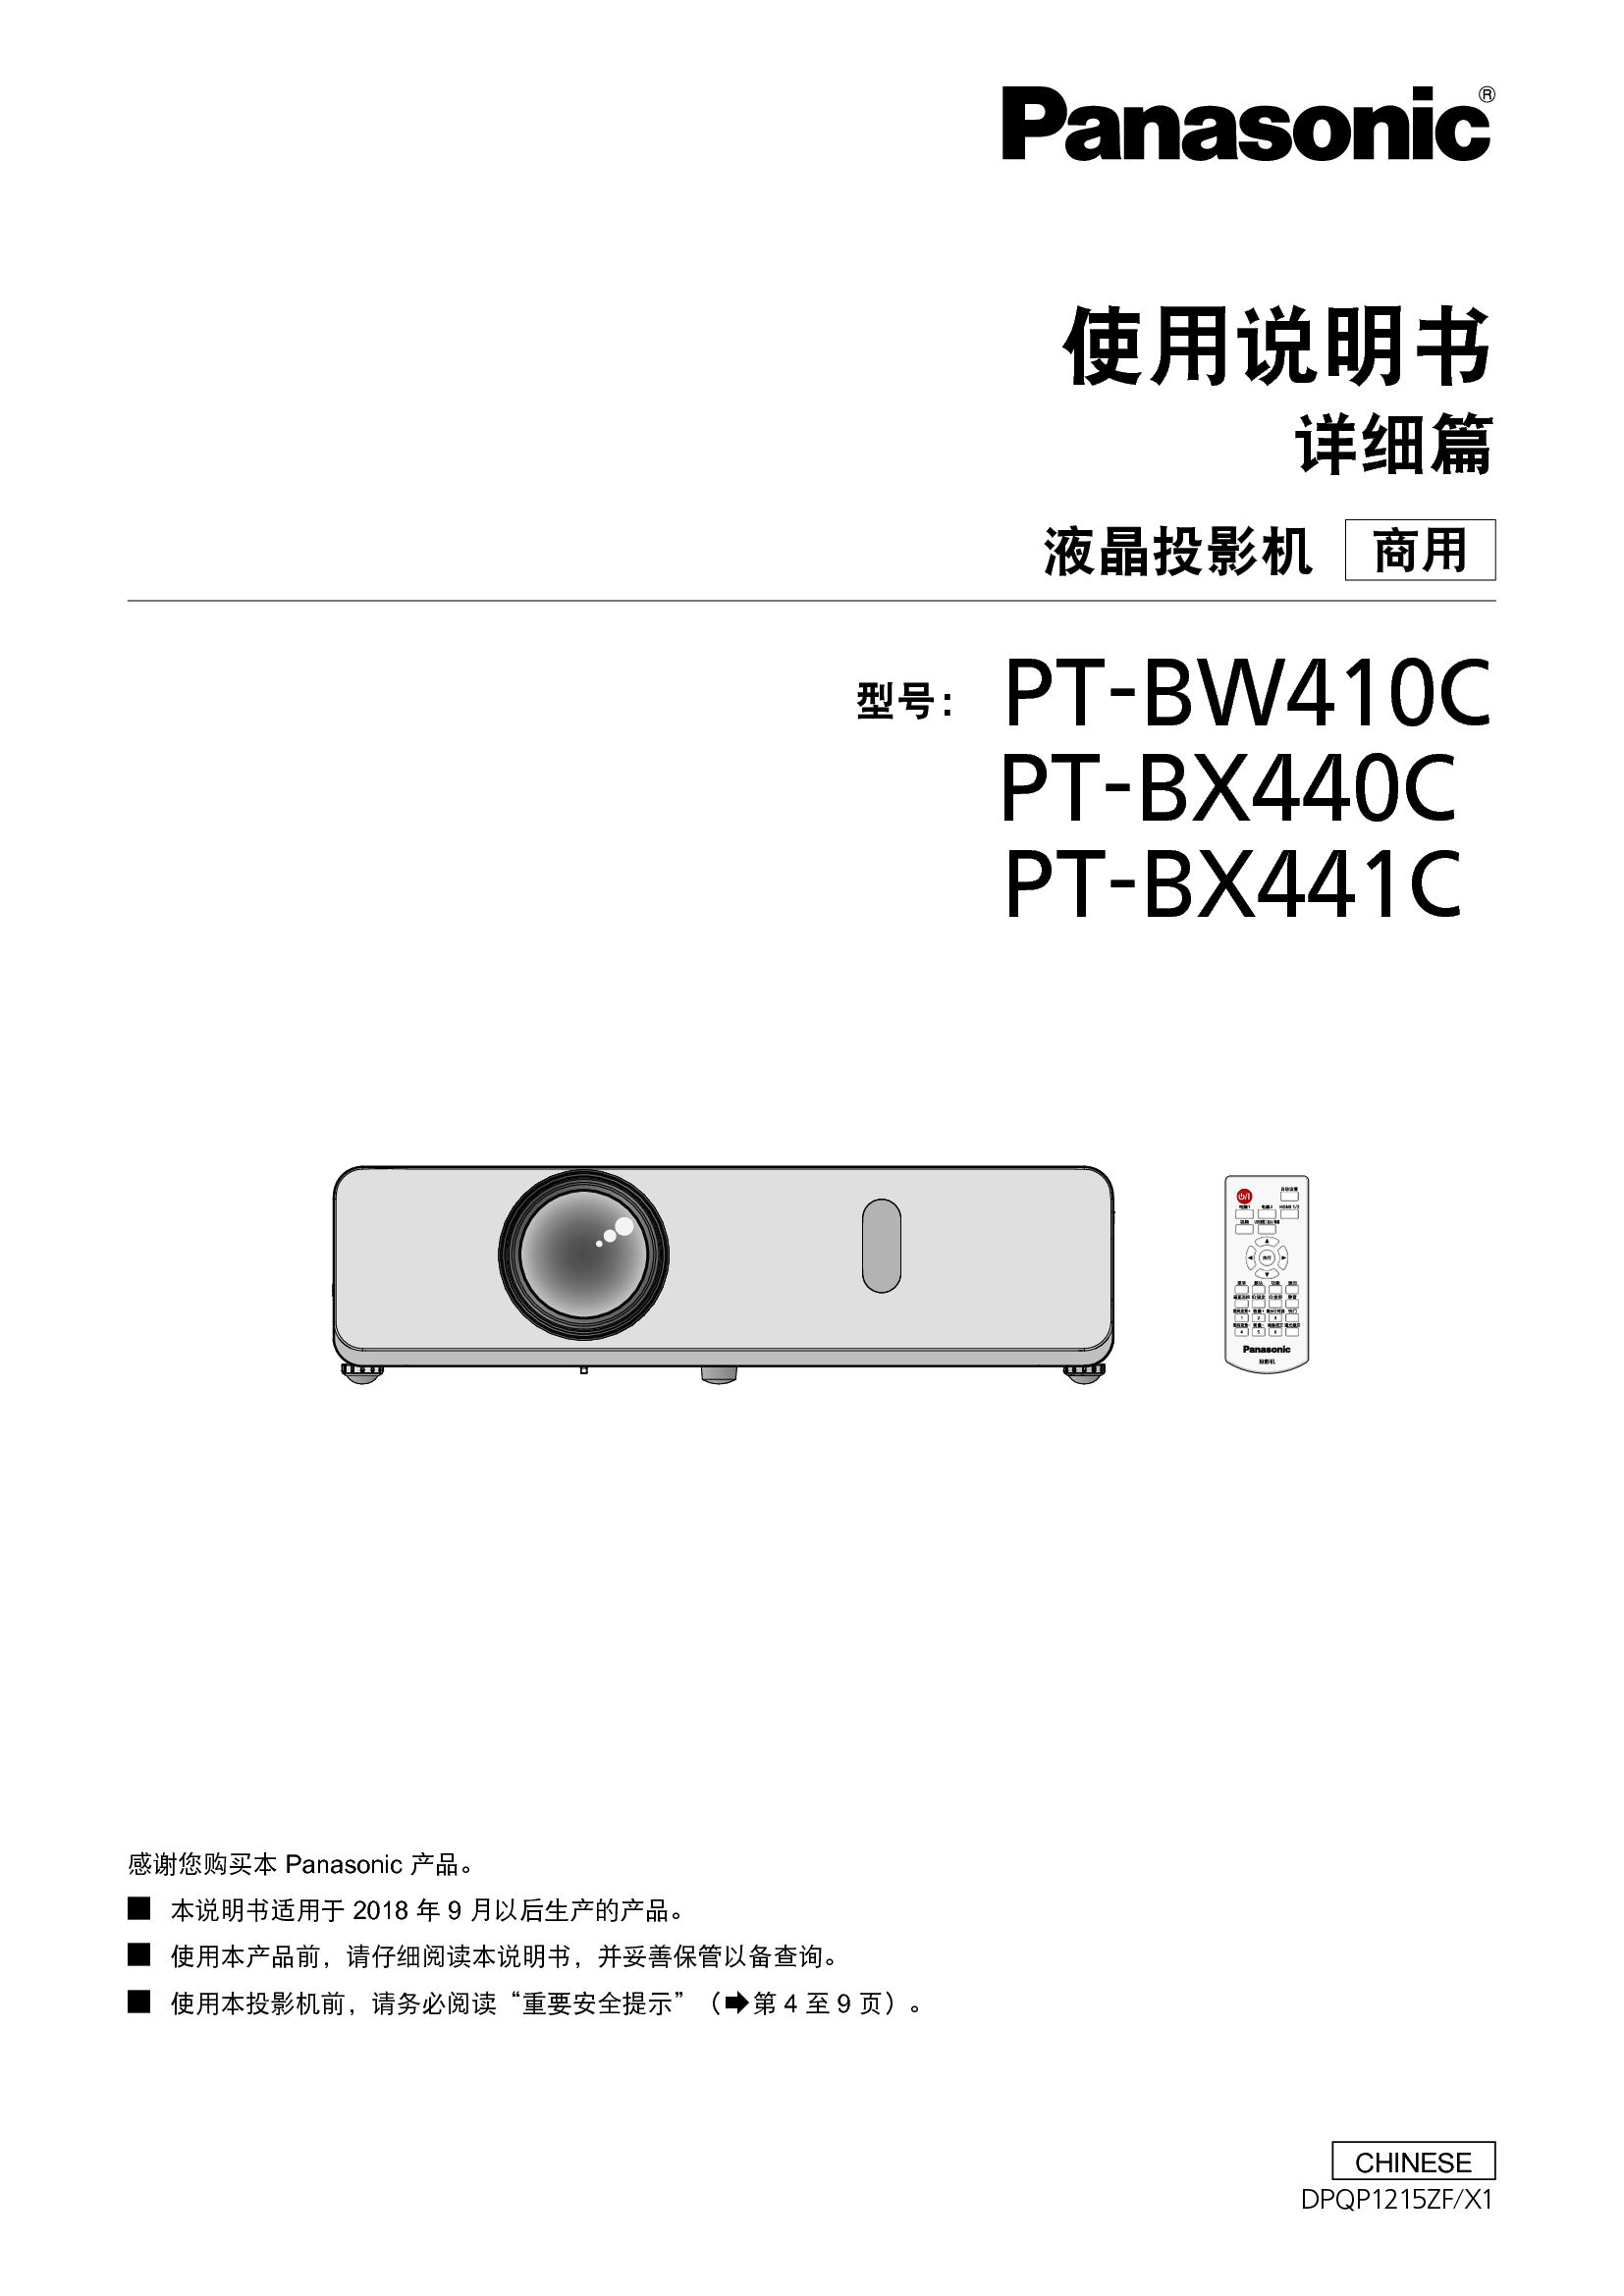 松下 Panasonic PT-BW410C 使用说明书 封面